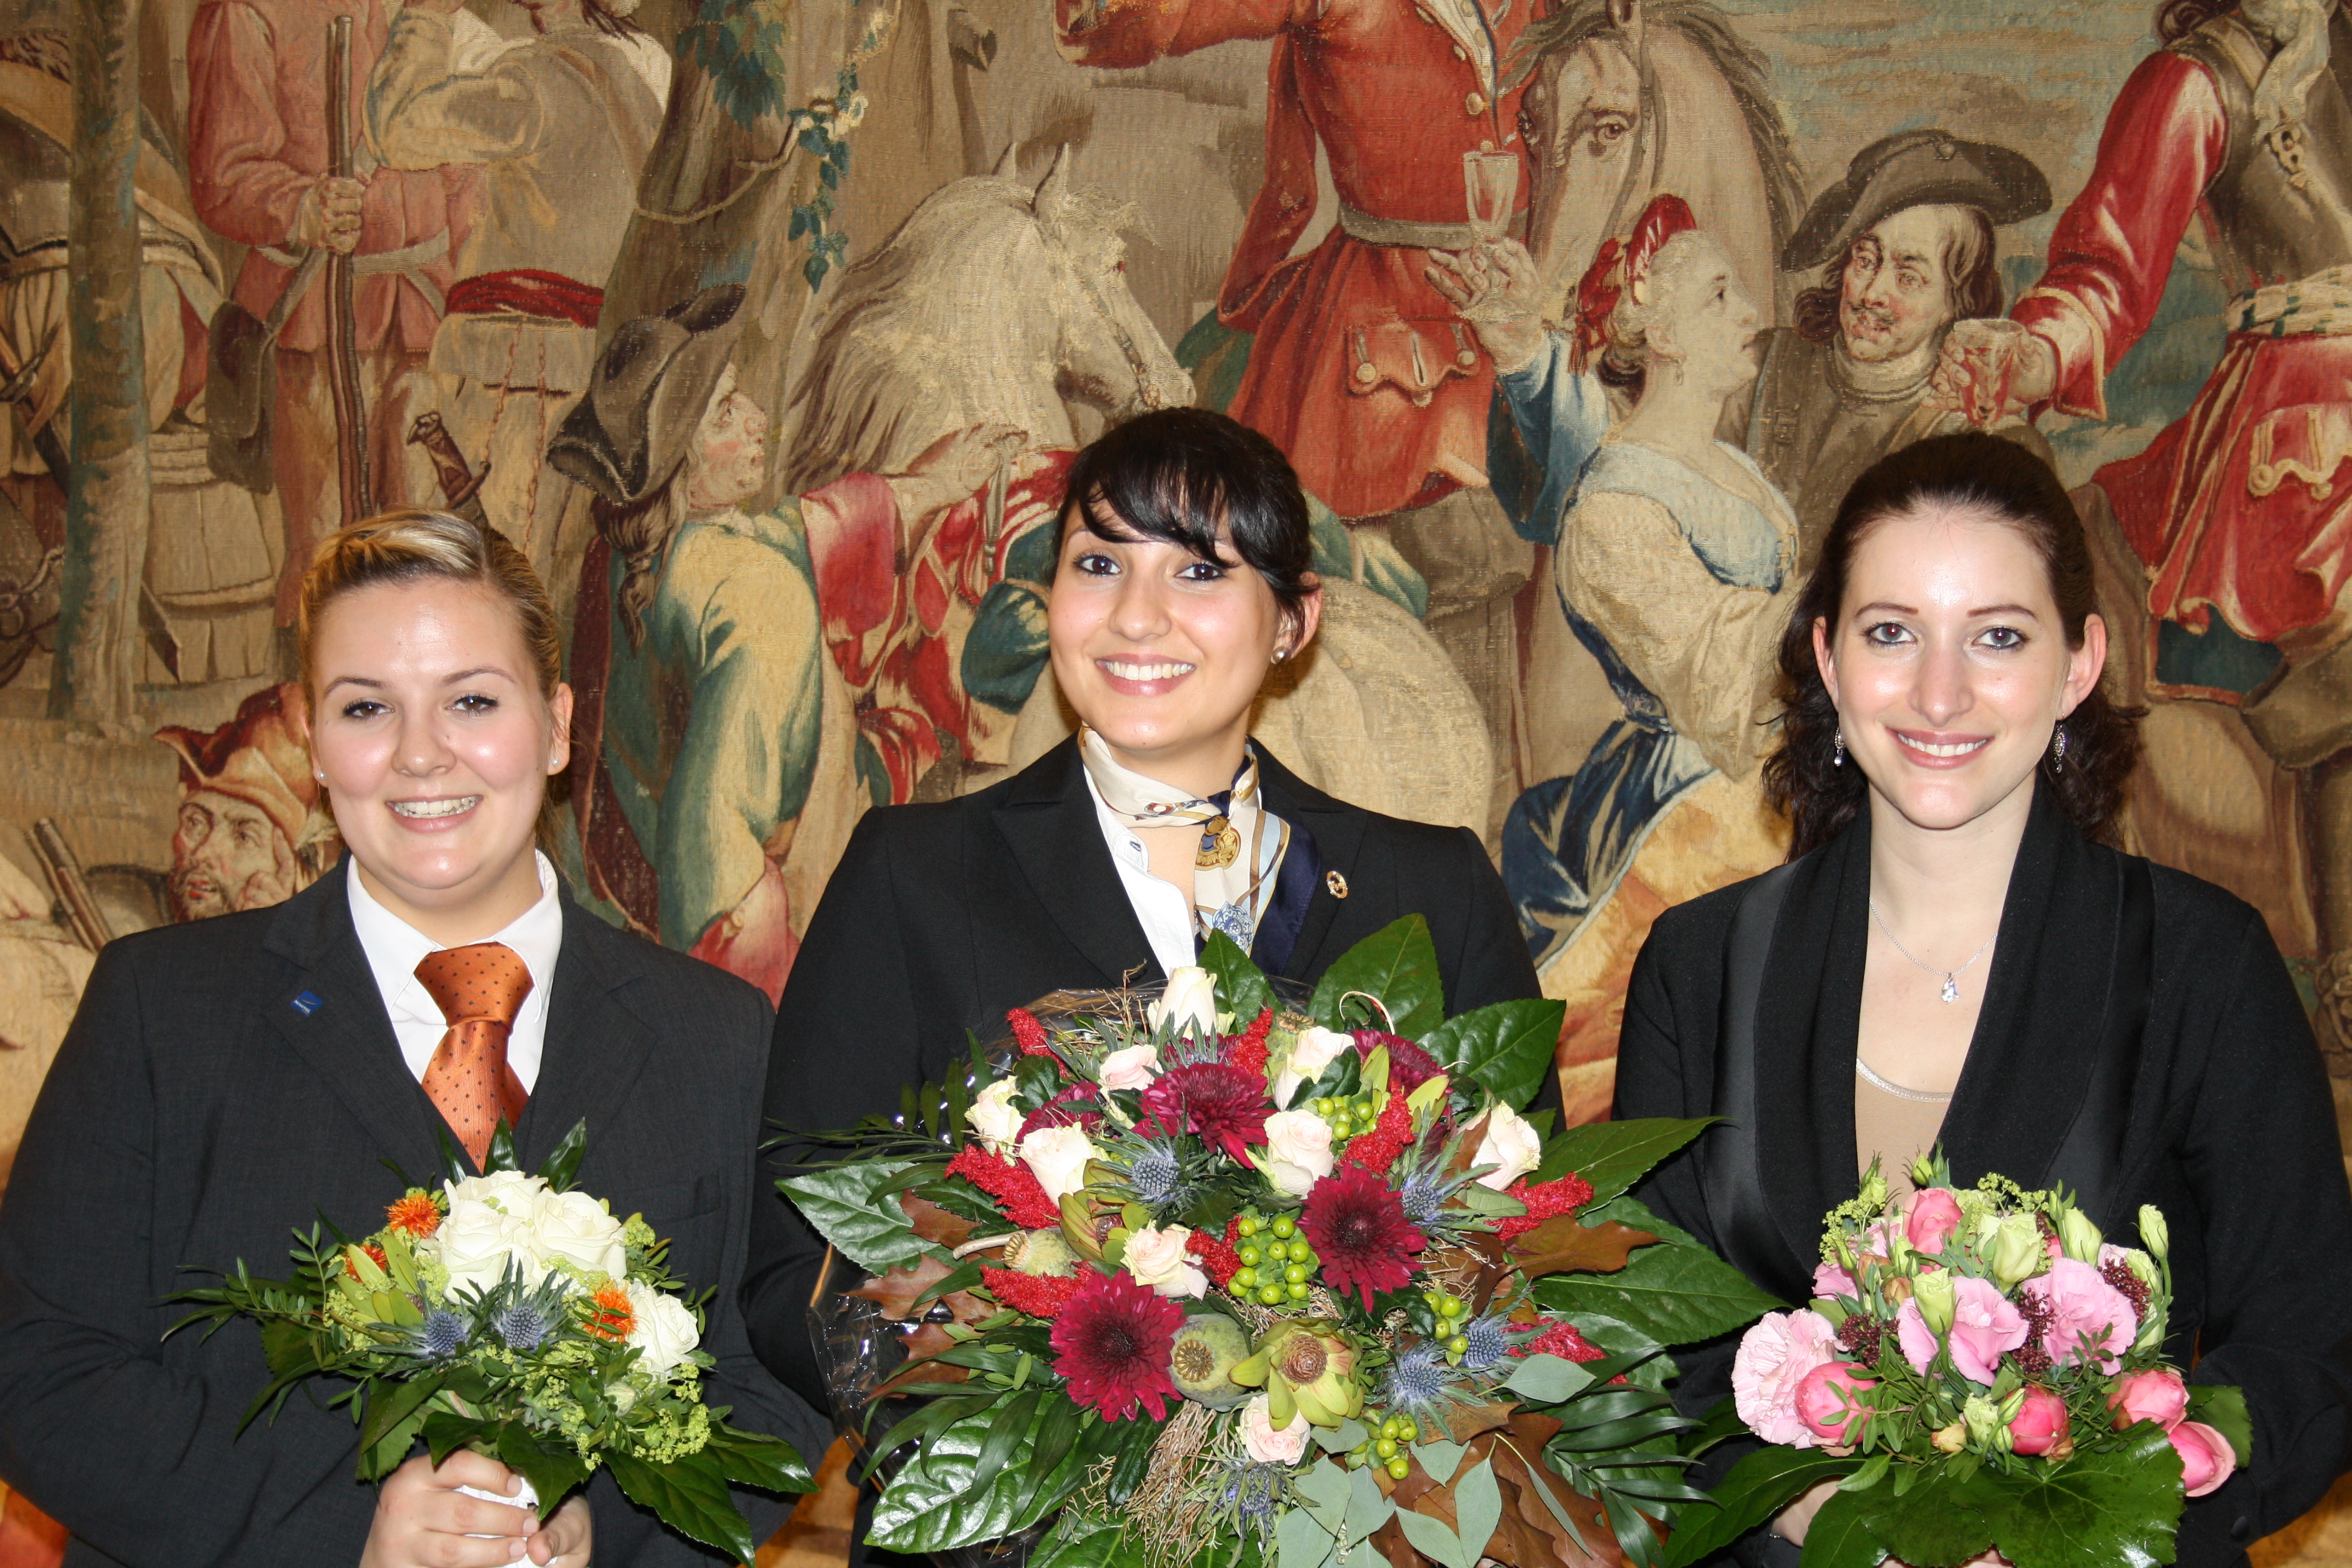 Die Finalisten des AICR-Wettbewerbs "Receptionist of the Year" (von links): Johanna Boss, Rima Barakat (Siegerin), Nathalie Colin